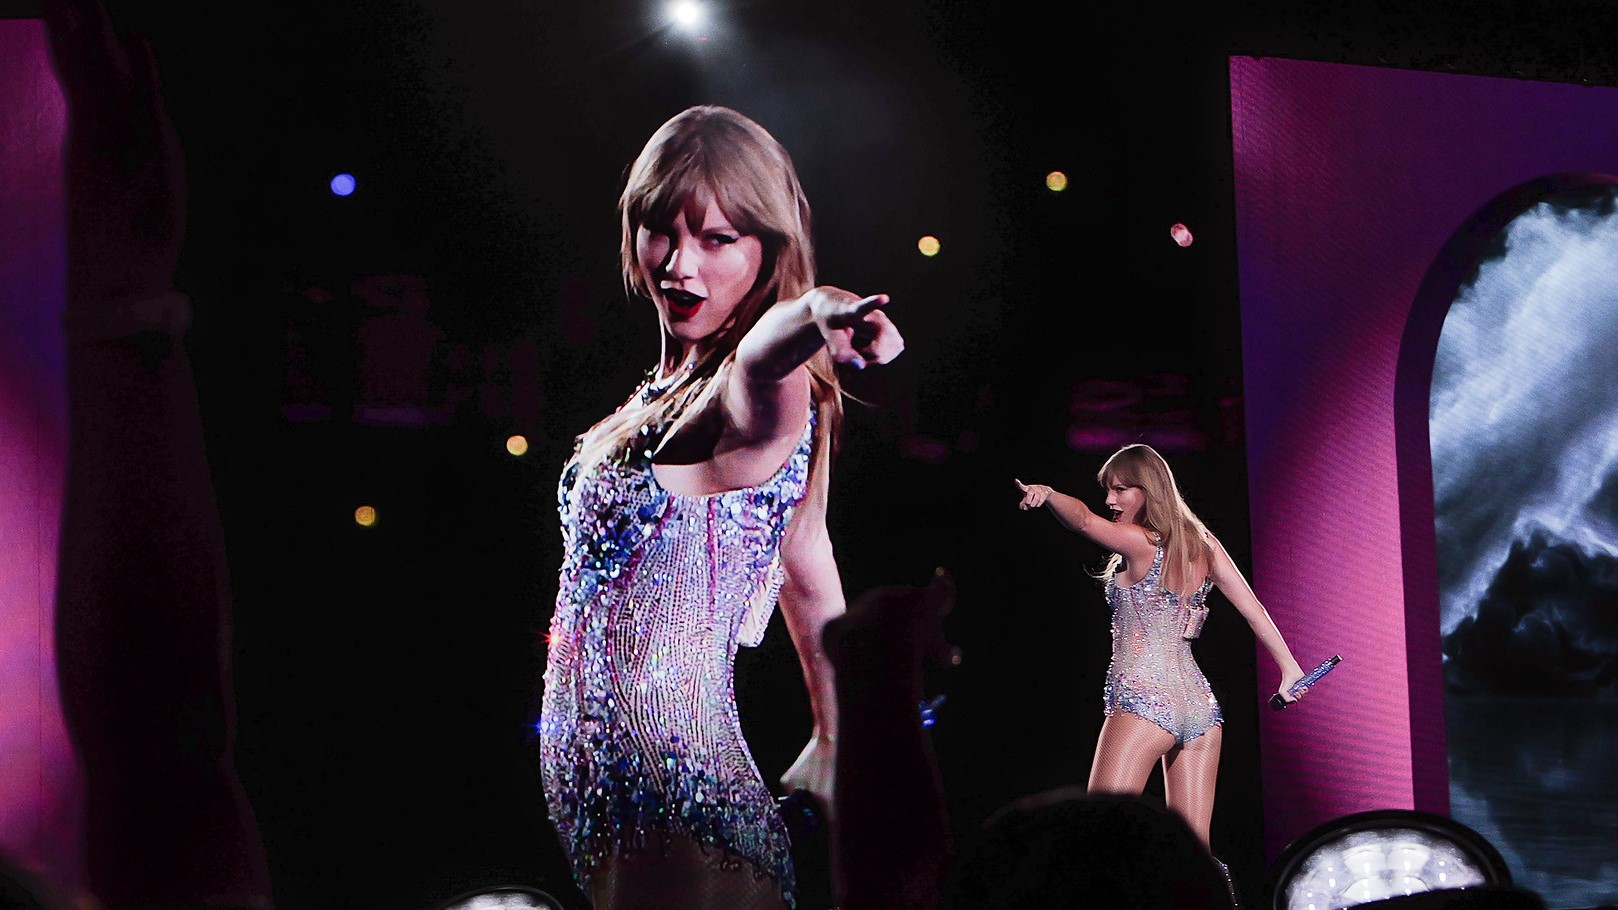 Taylor Swifts nakne deepfakes dukket opp på X, noe som har opprørt sangerens fans.